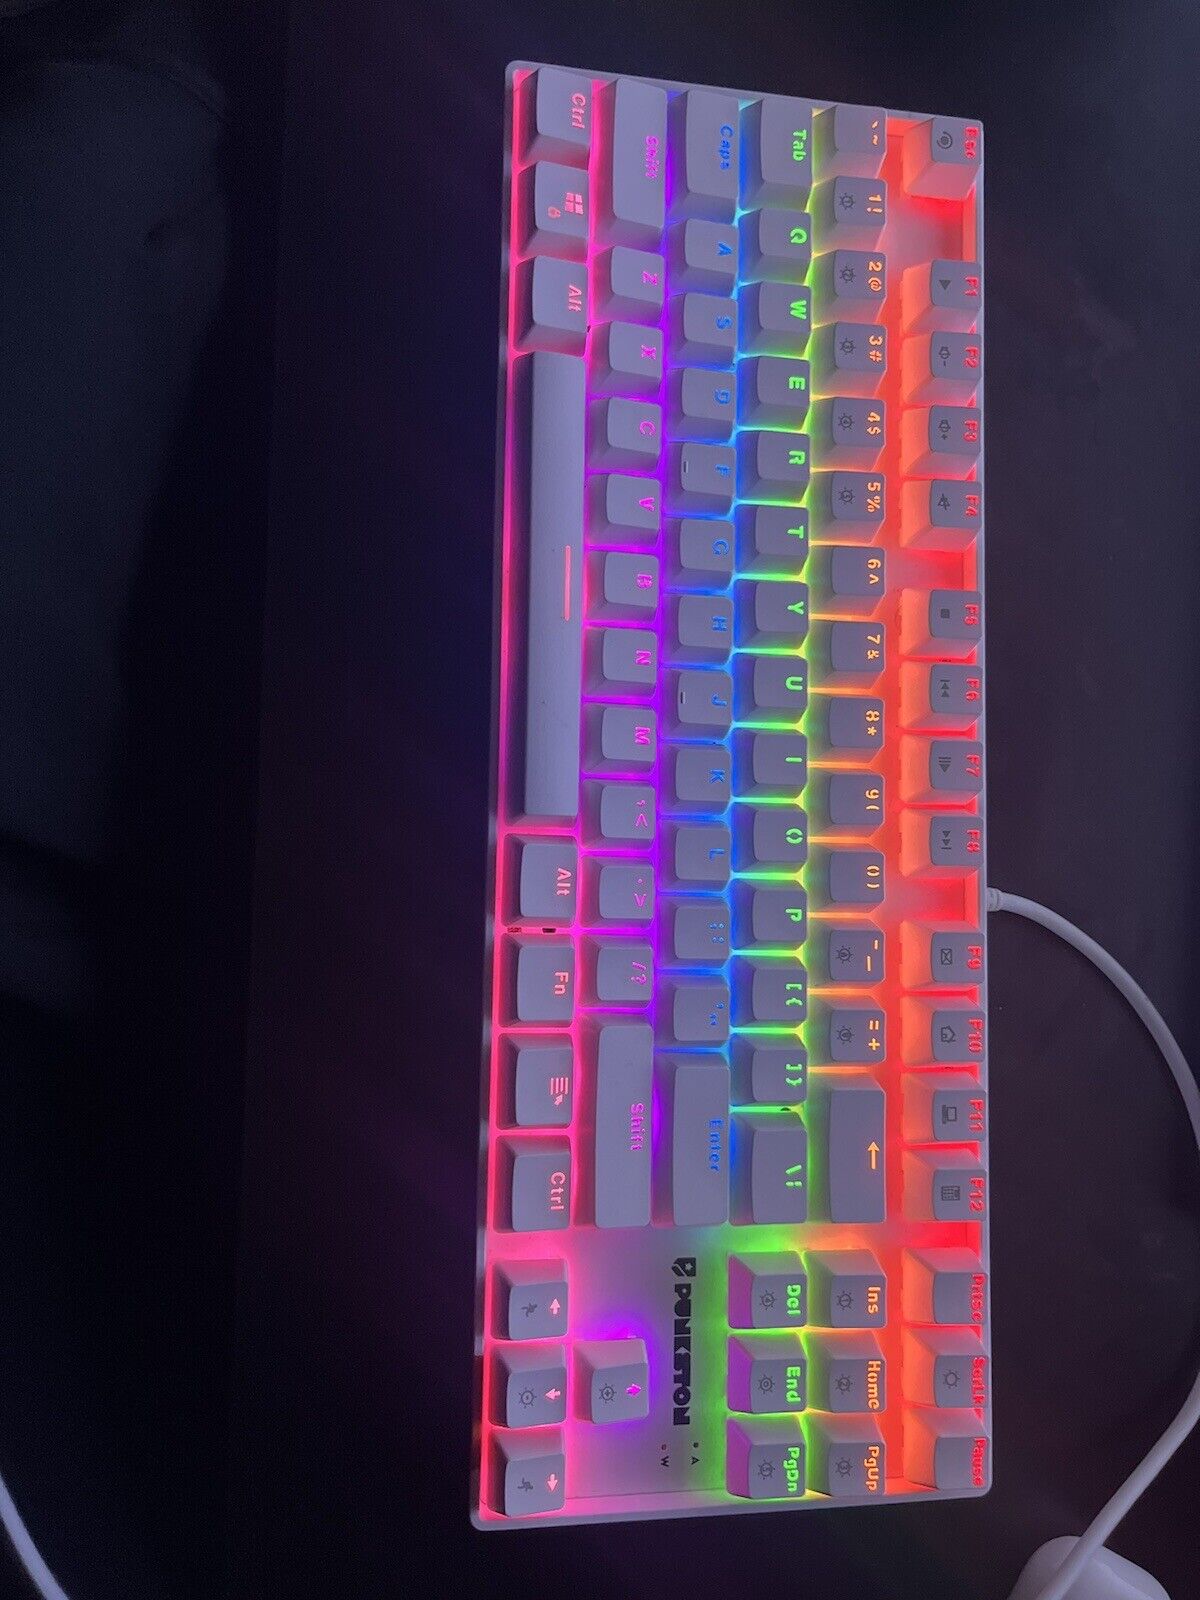 Punkston TK87 Mechanical Gaming Keyboard - White